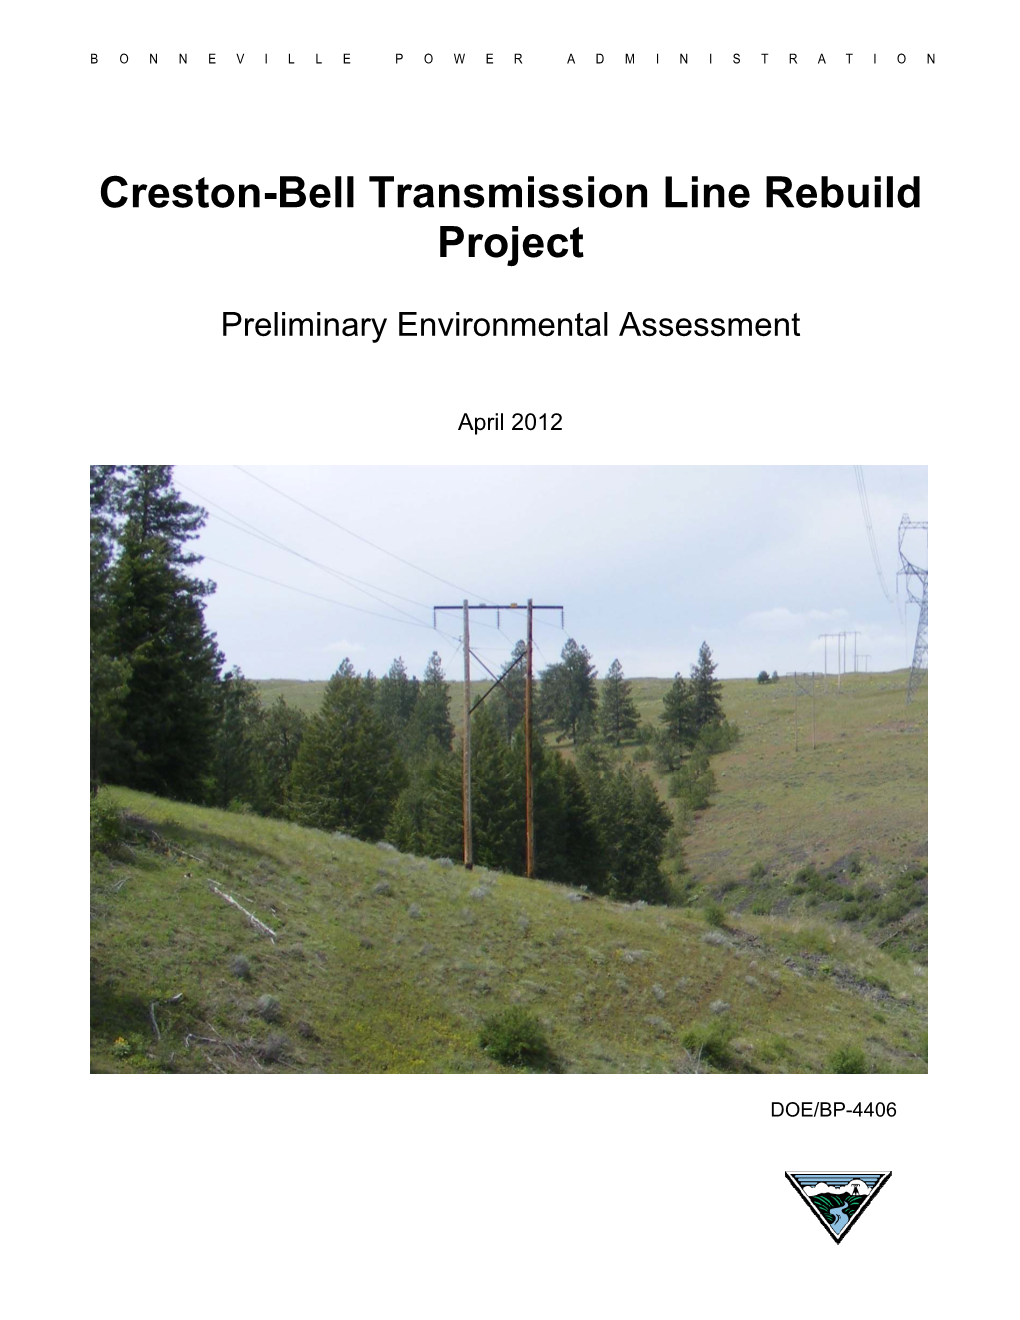 Creston-Bell Transmission Line Rebuild Project